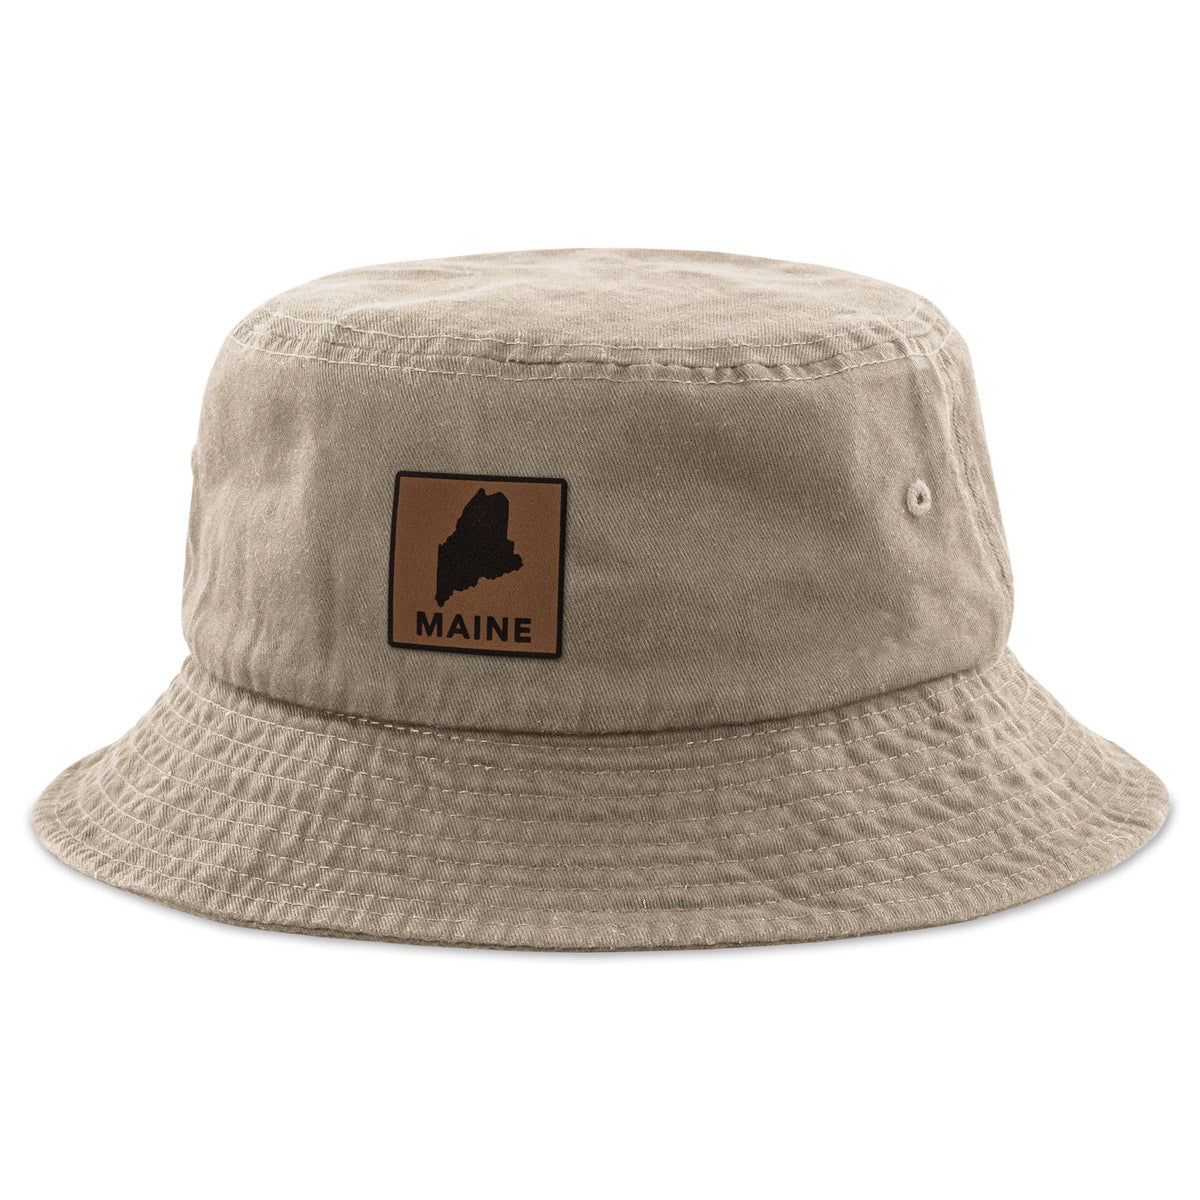 Maine Leather Patch Bucket Hat - Chowdaheadz